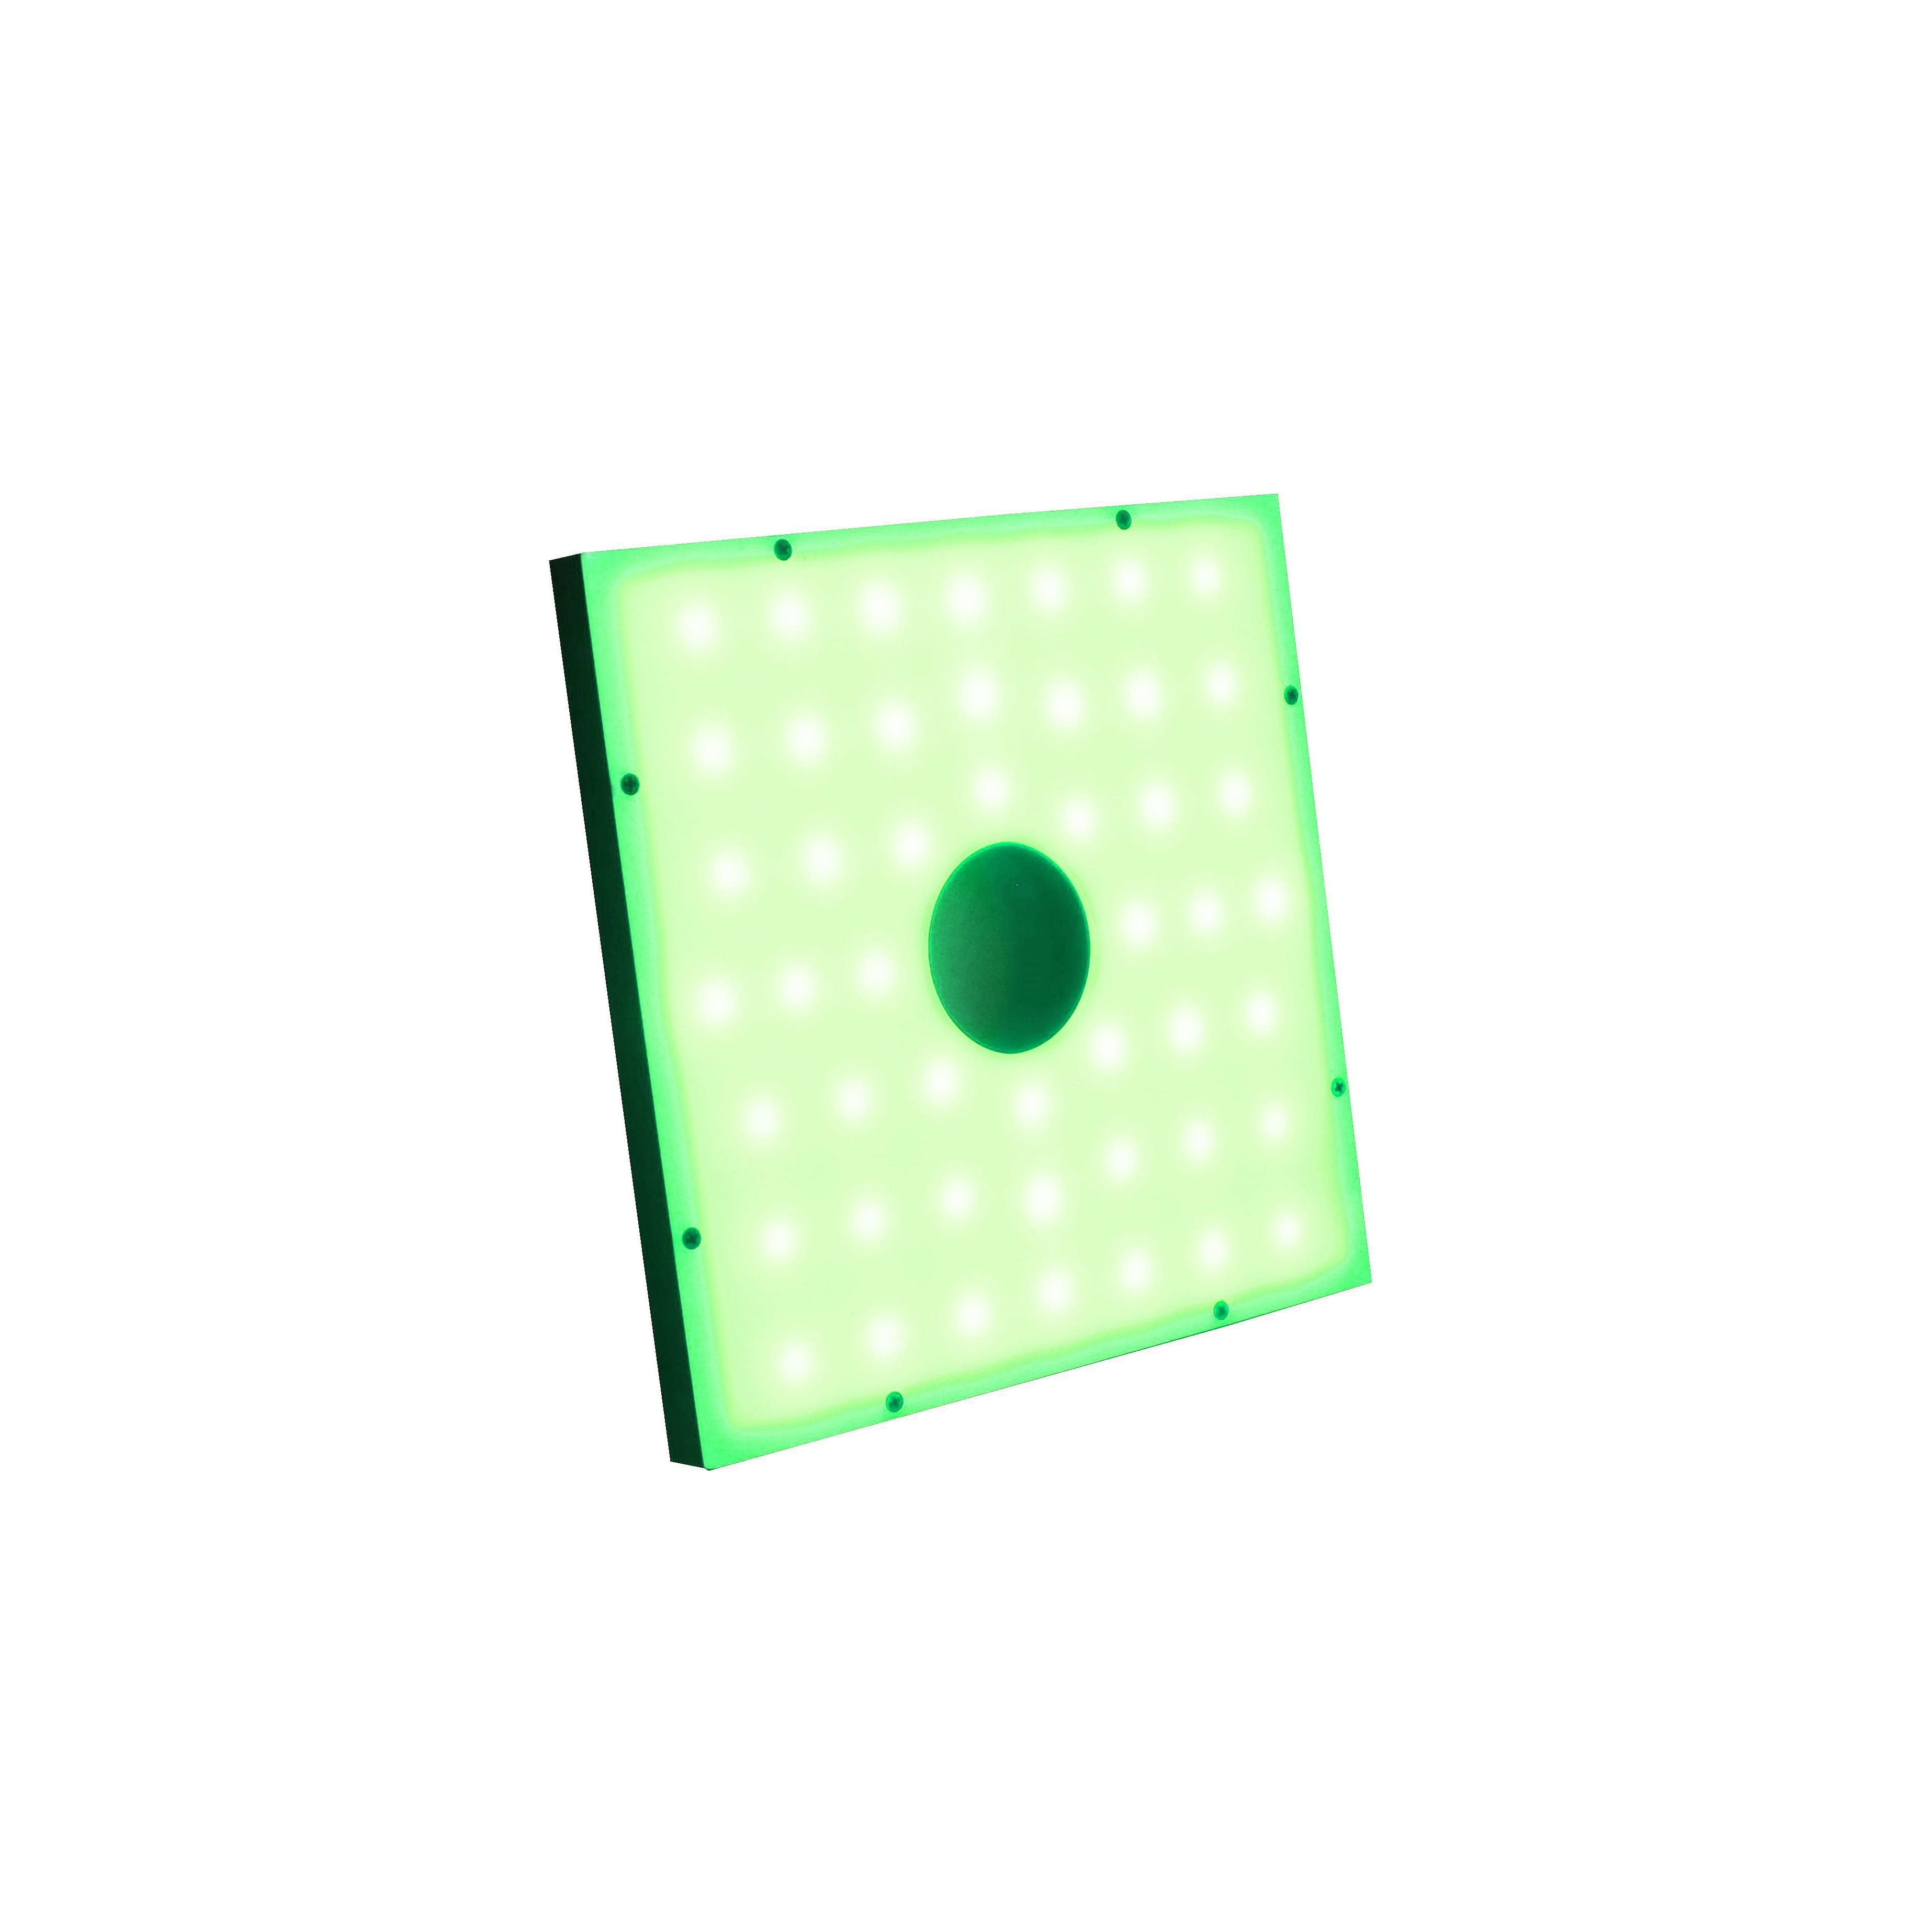 DSQ2-208/208 Diffused Square – Green